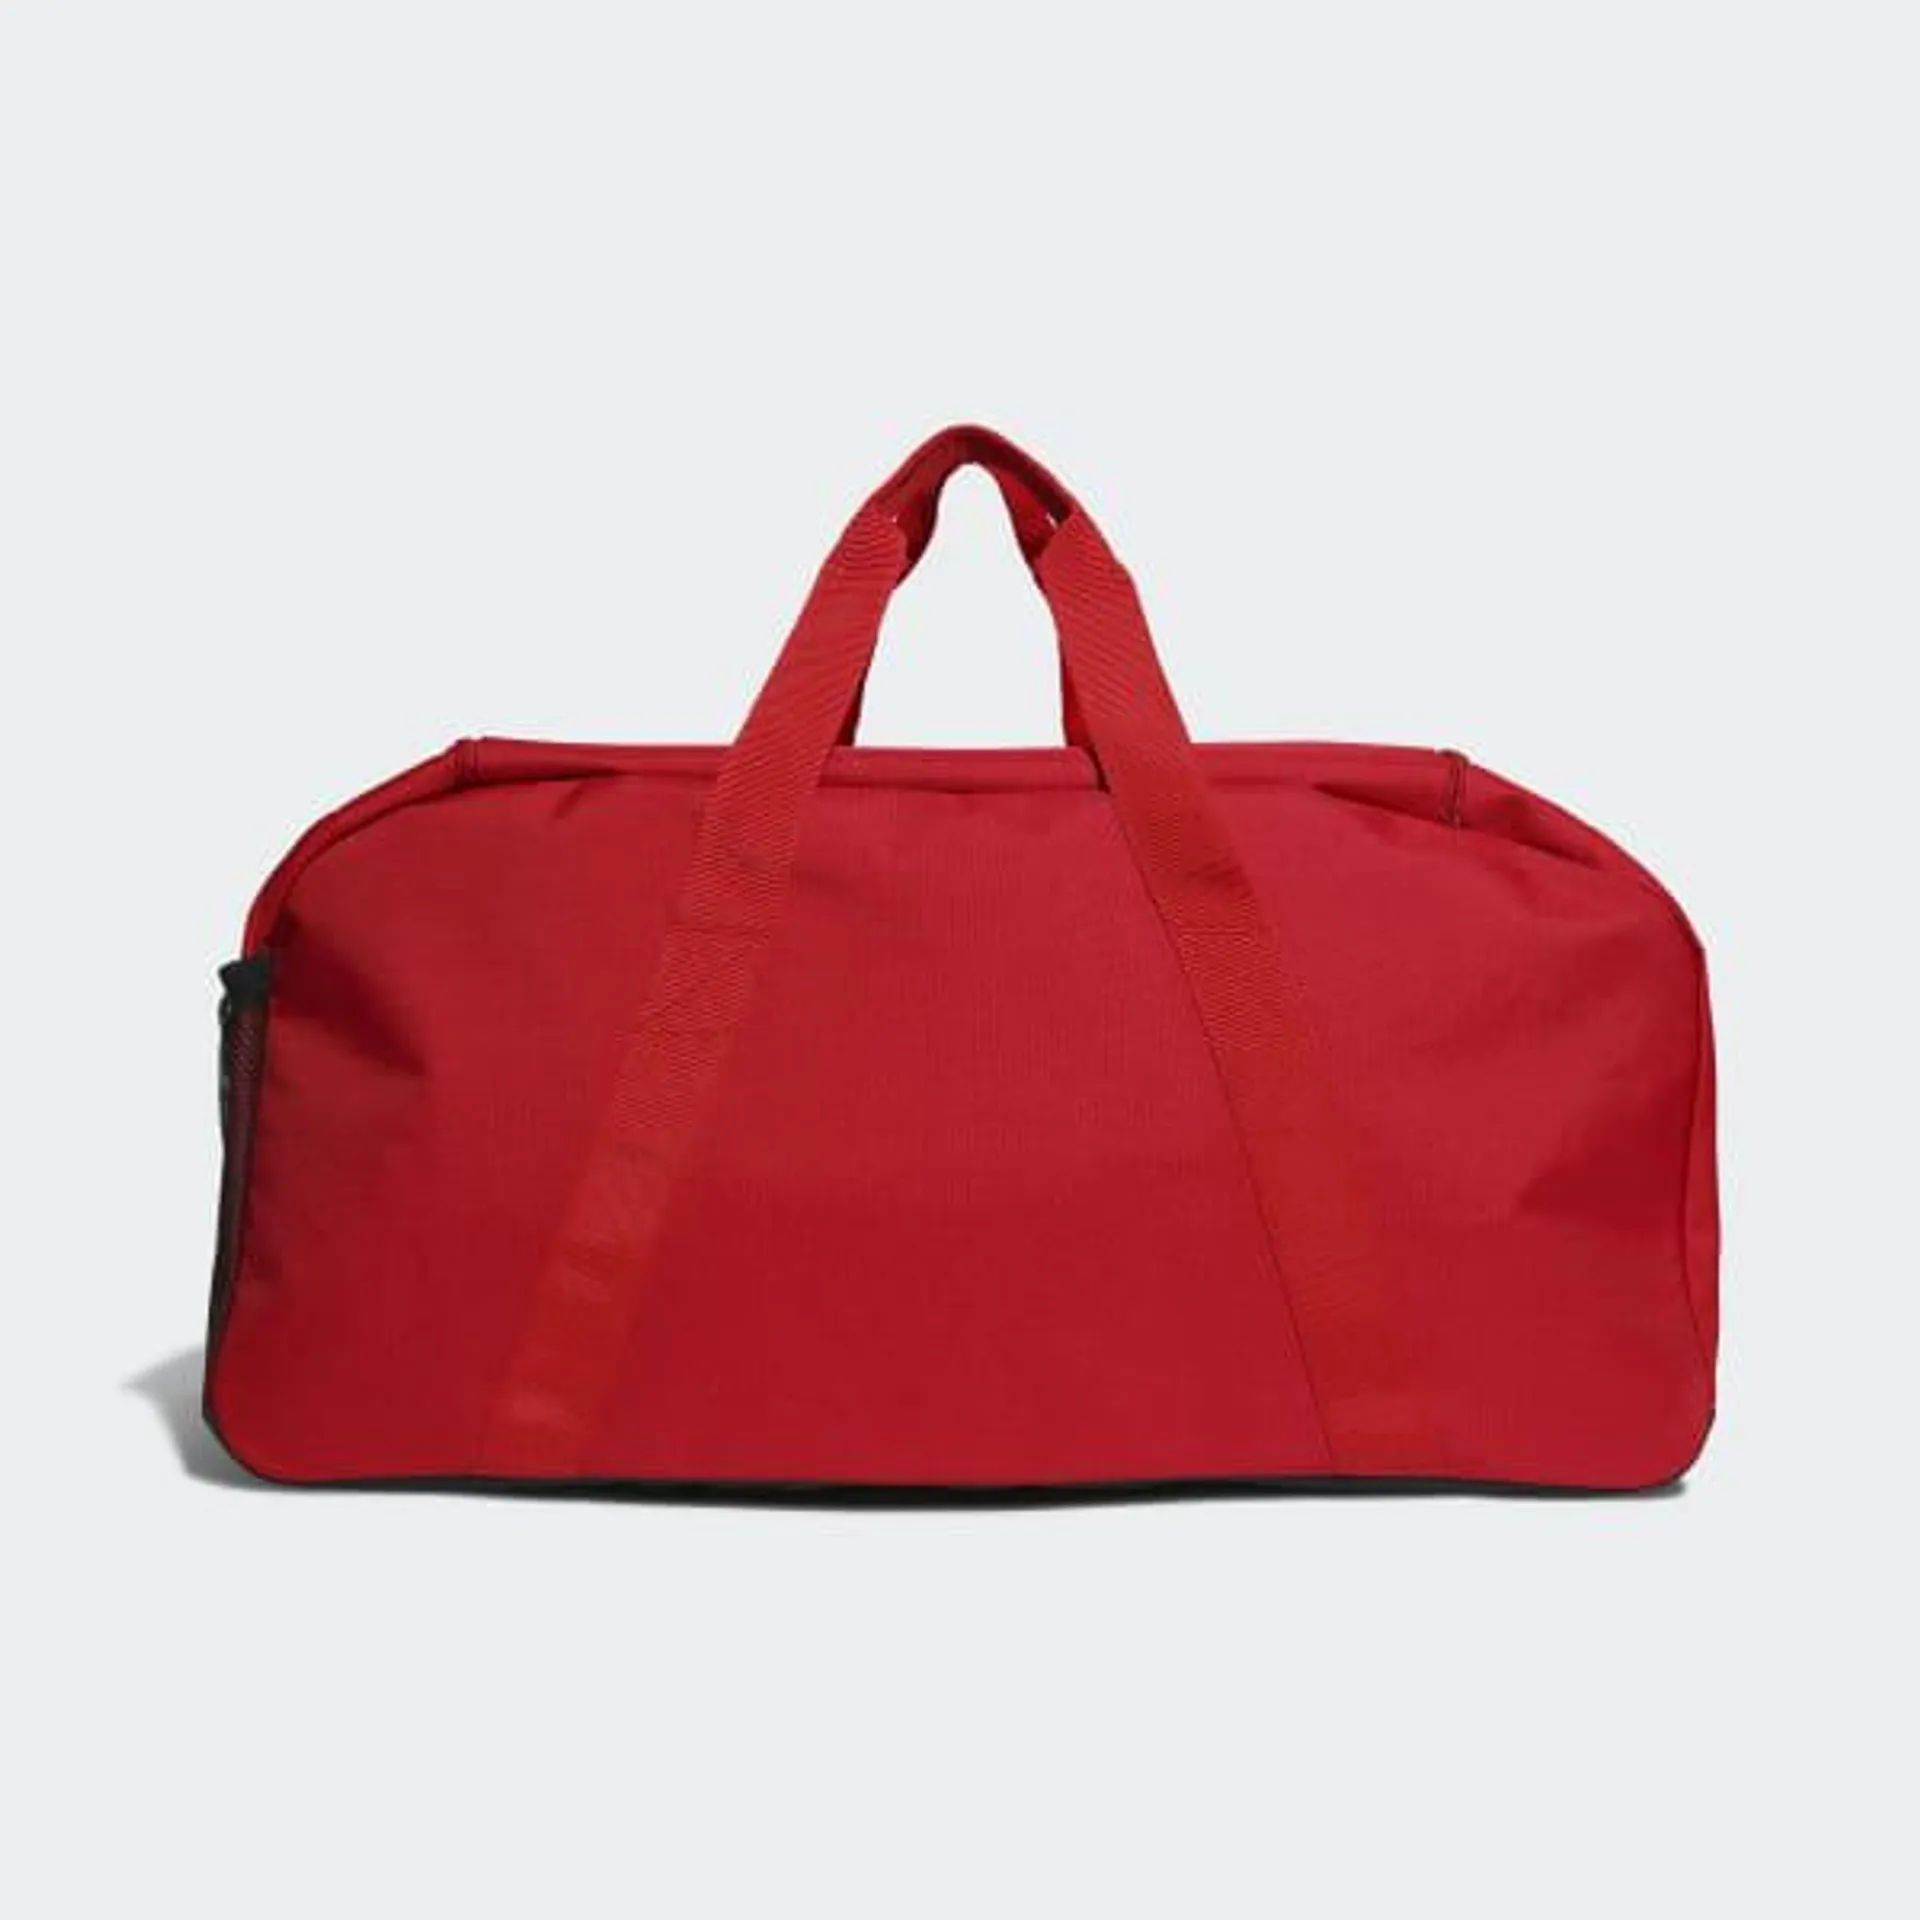 Tiro League Duffel Bag Medium